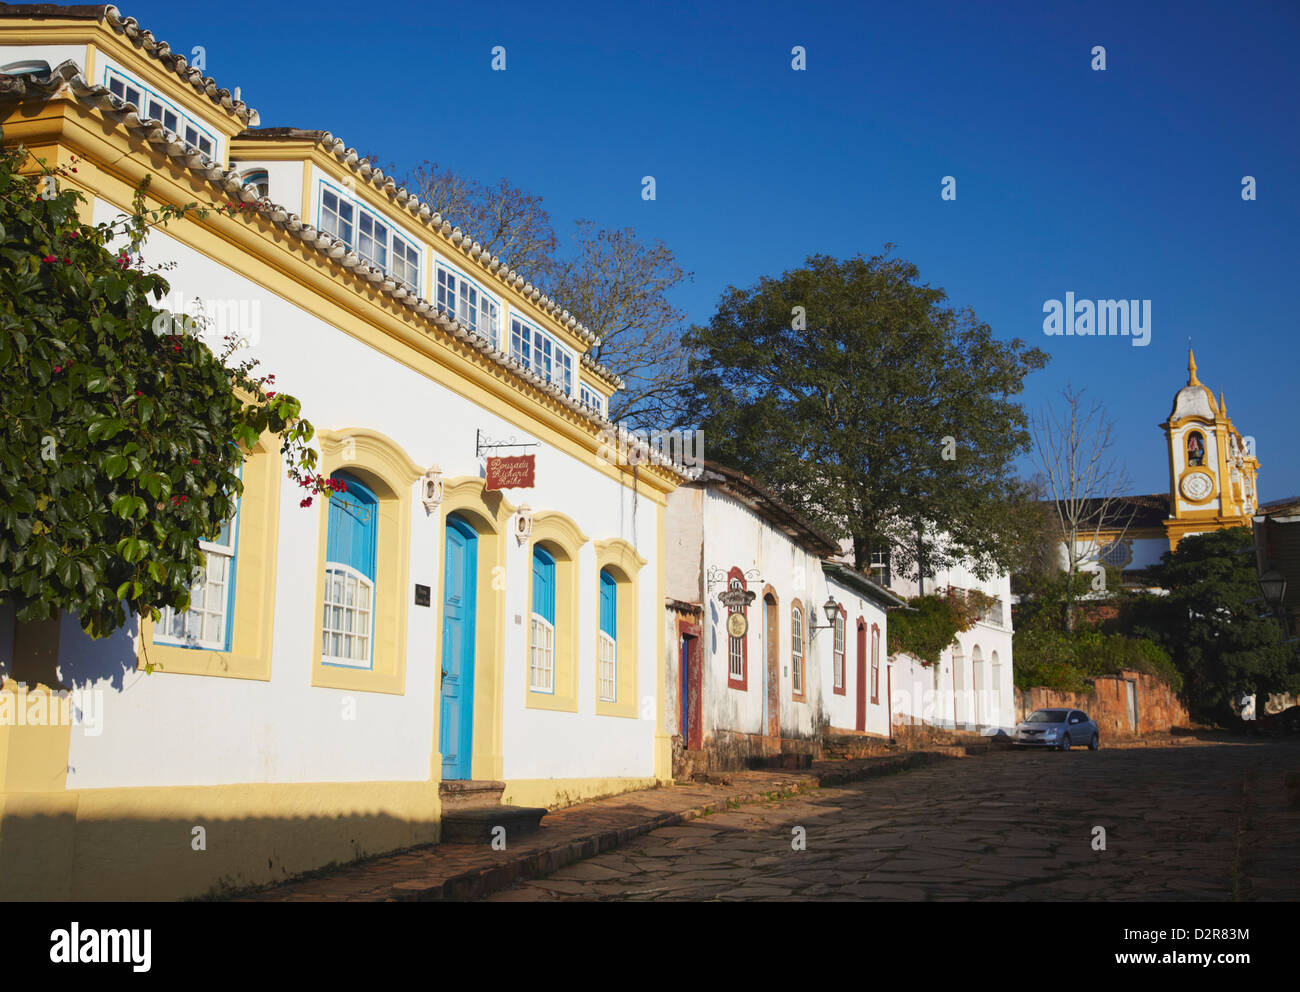 Bâtiments coloniaux et de l'église Matriz de Santo Antonio, Tiradentes, Minas Gerais, Brésil, Amérique du Sud Banque D'Images